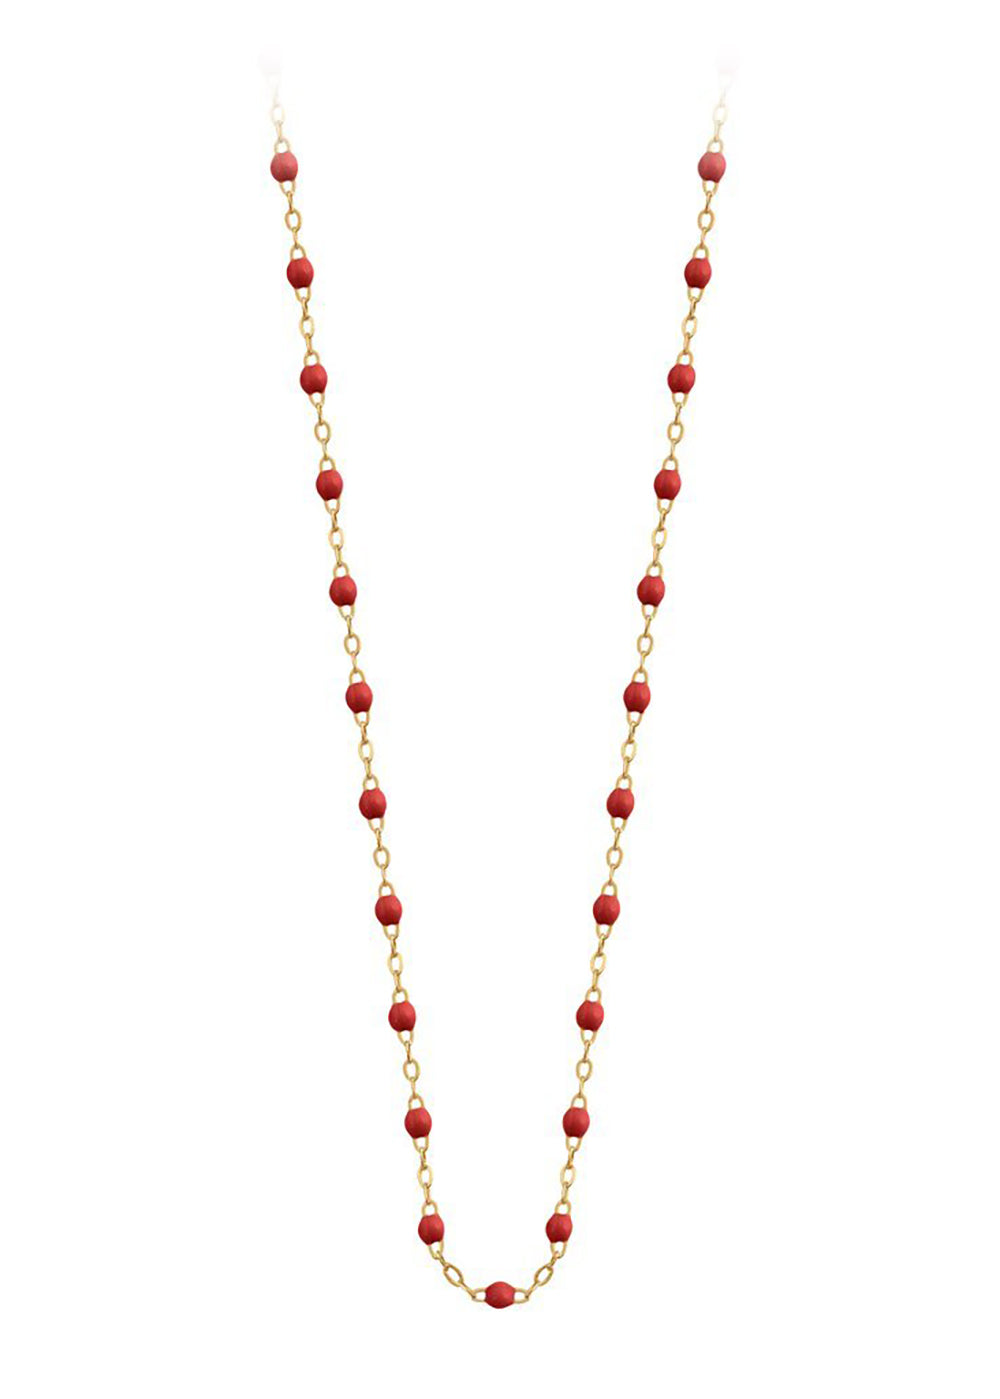 gigiCLOZEAU Jewlery - classic gigi necklace poppy |18k gold